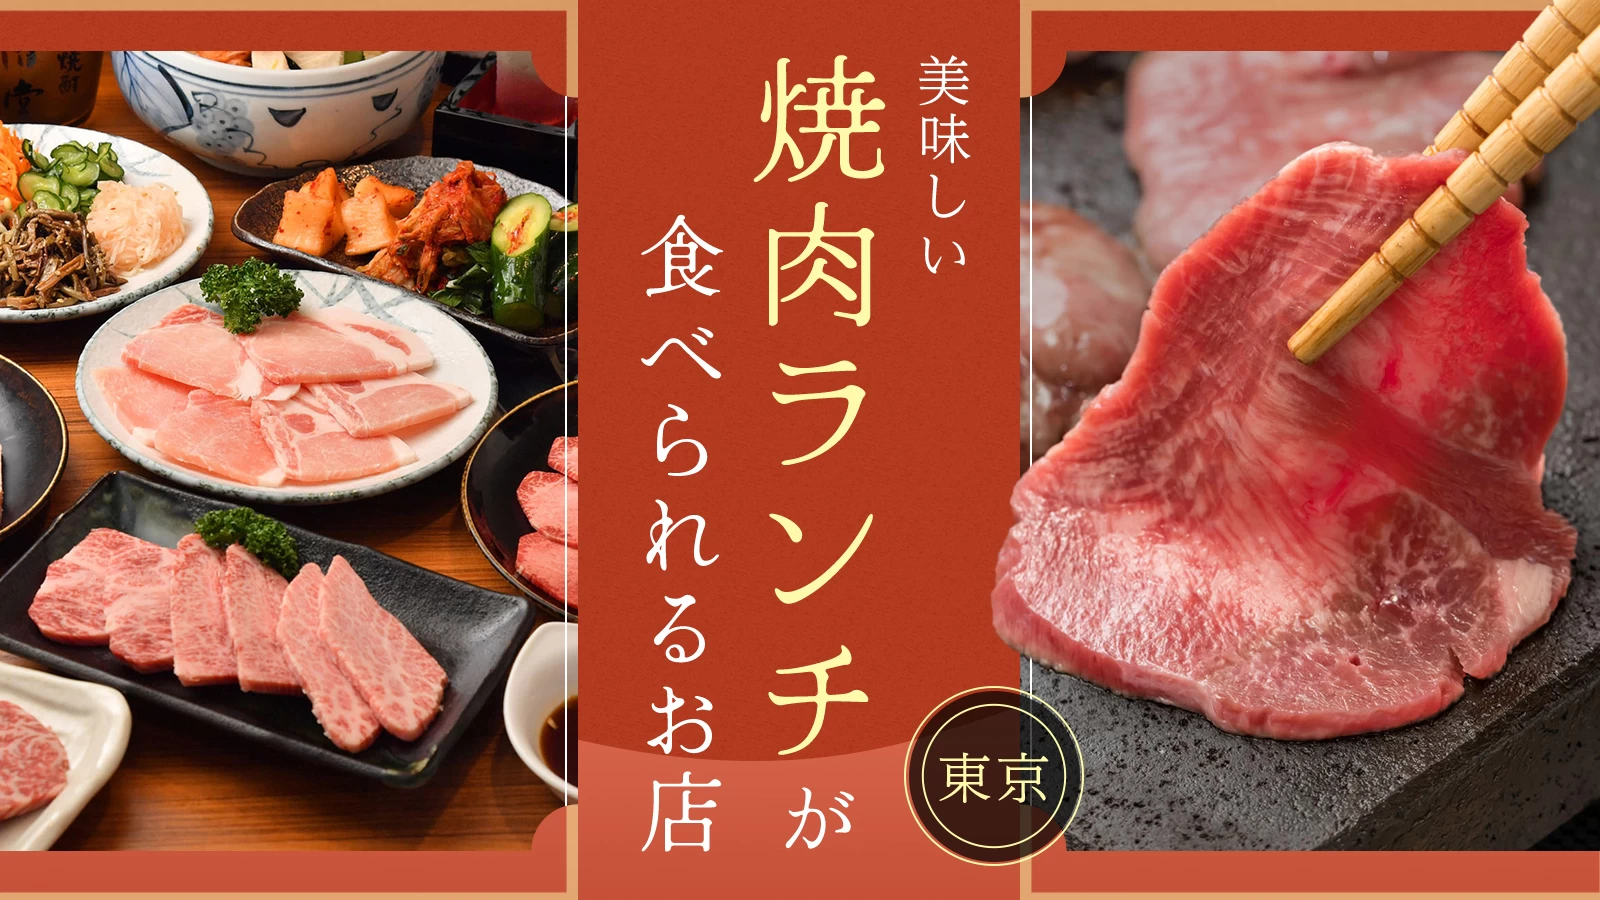 【東京】美味しい焼き肉ランチが食べられるお店9選